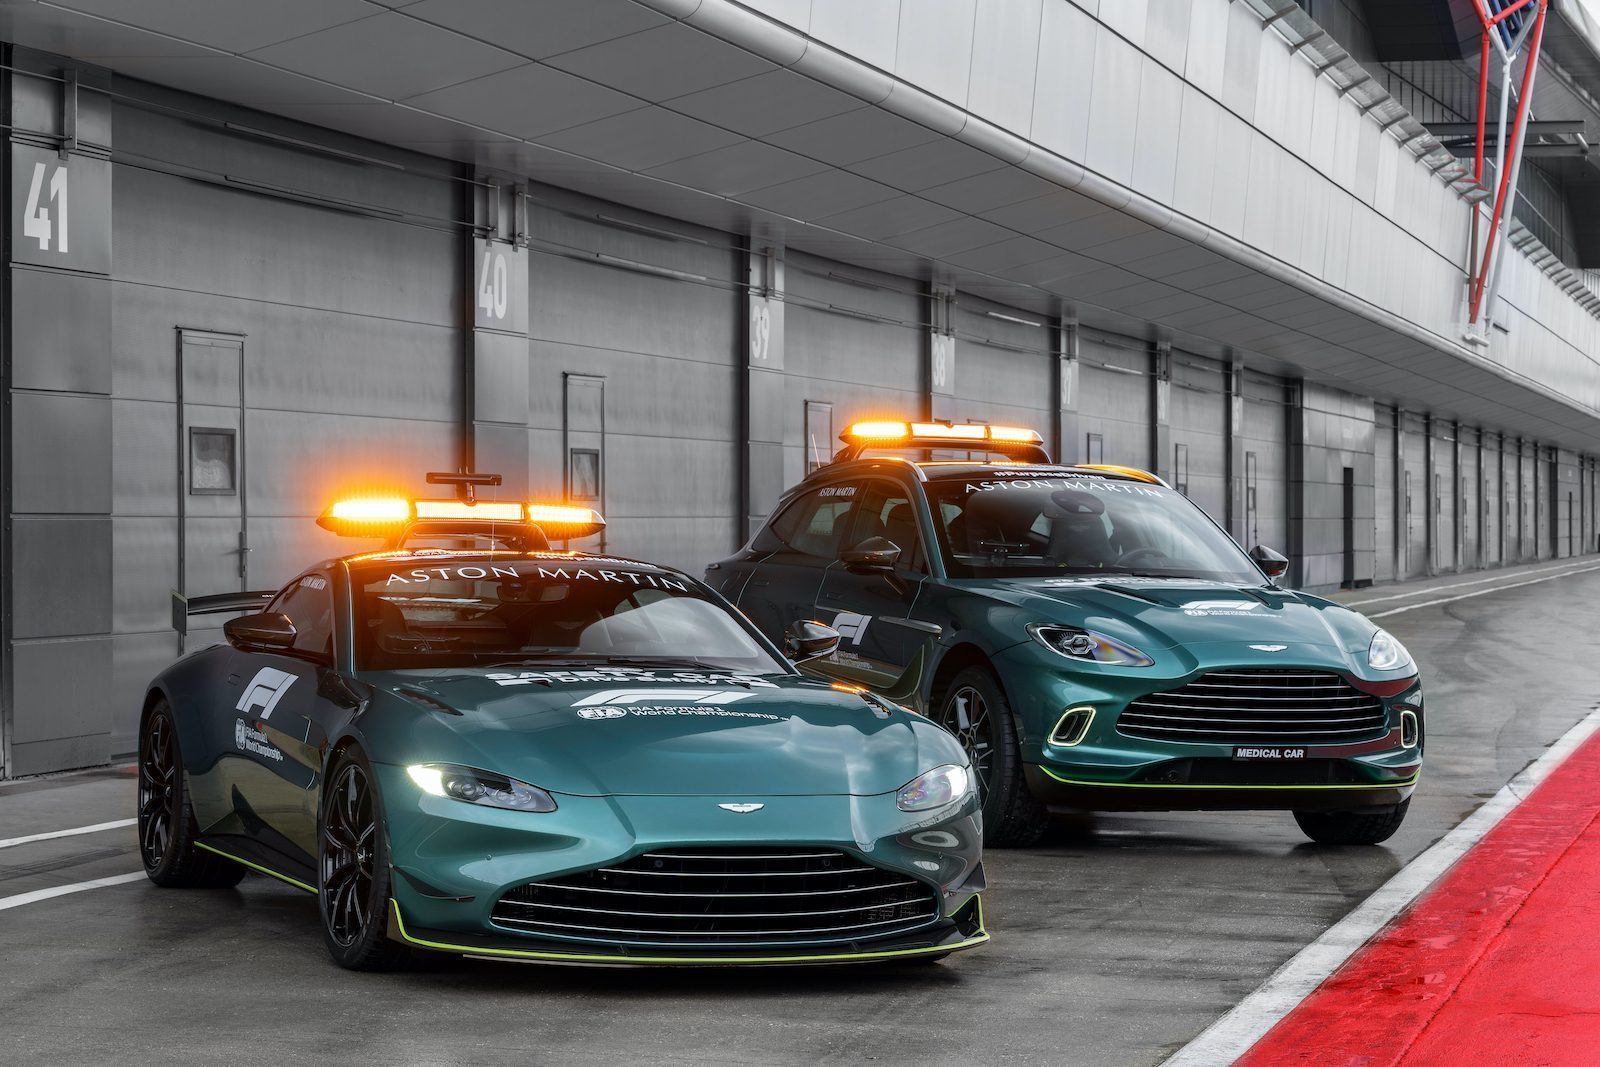 De Aston Martin F1 Safety & Medical Car zijn hier Autoblog.nl